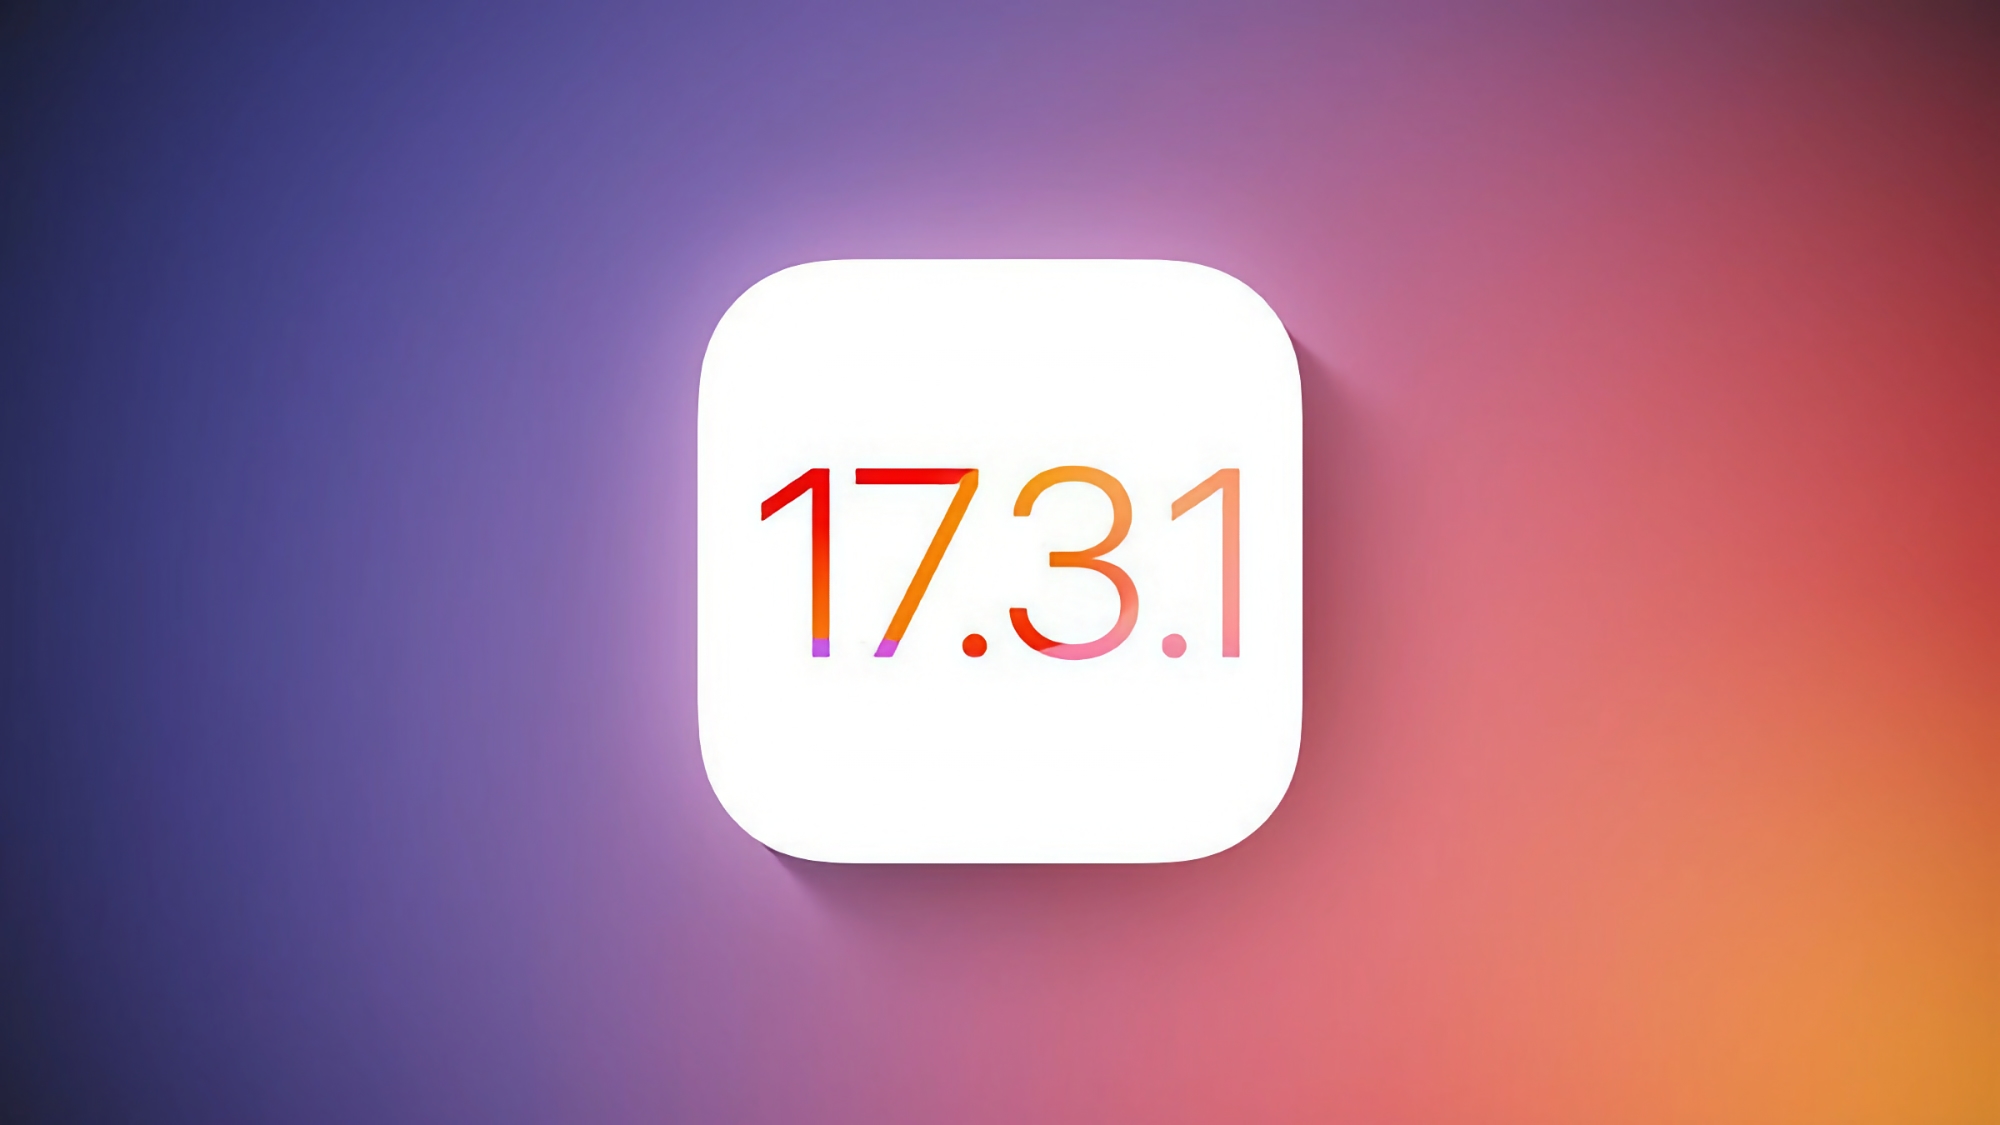 Apple har frigivet iOS 17.3.1 til iPhone-brugere: Hvad er nyt?